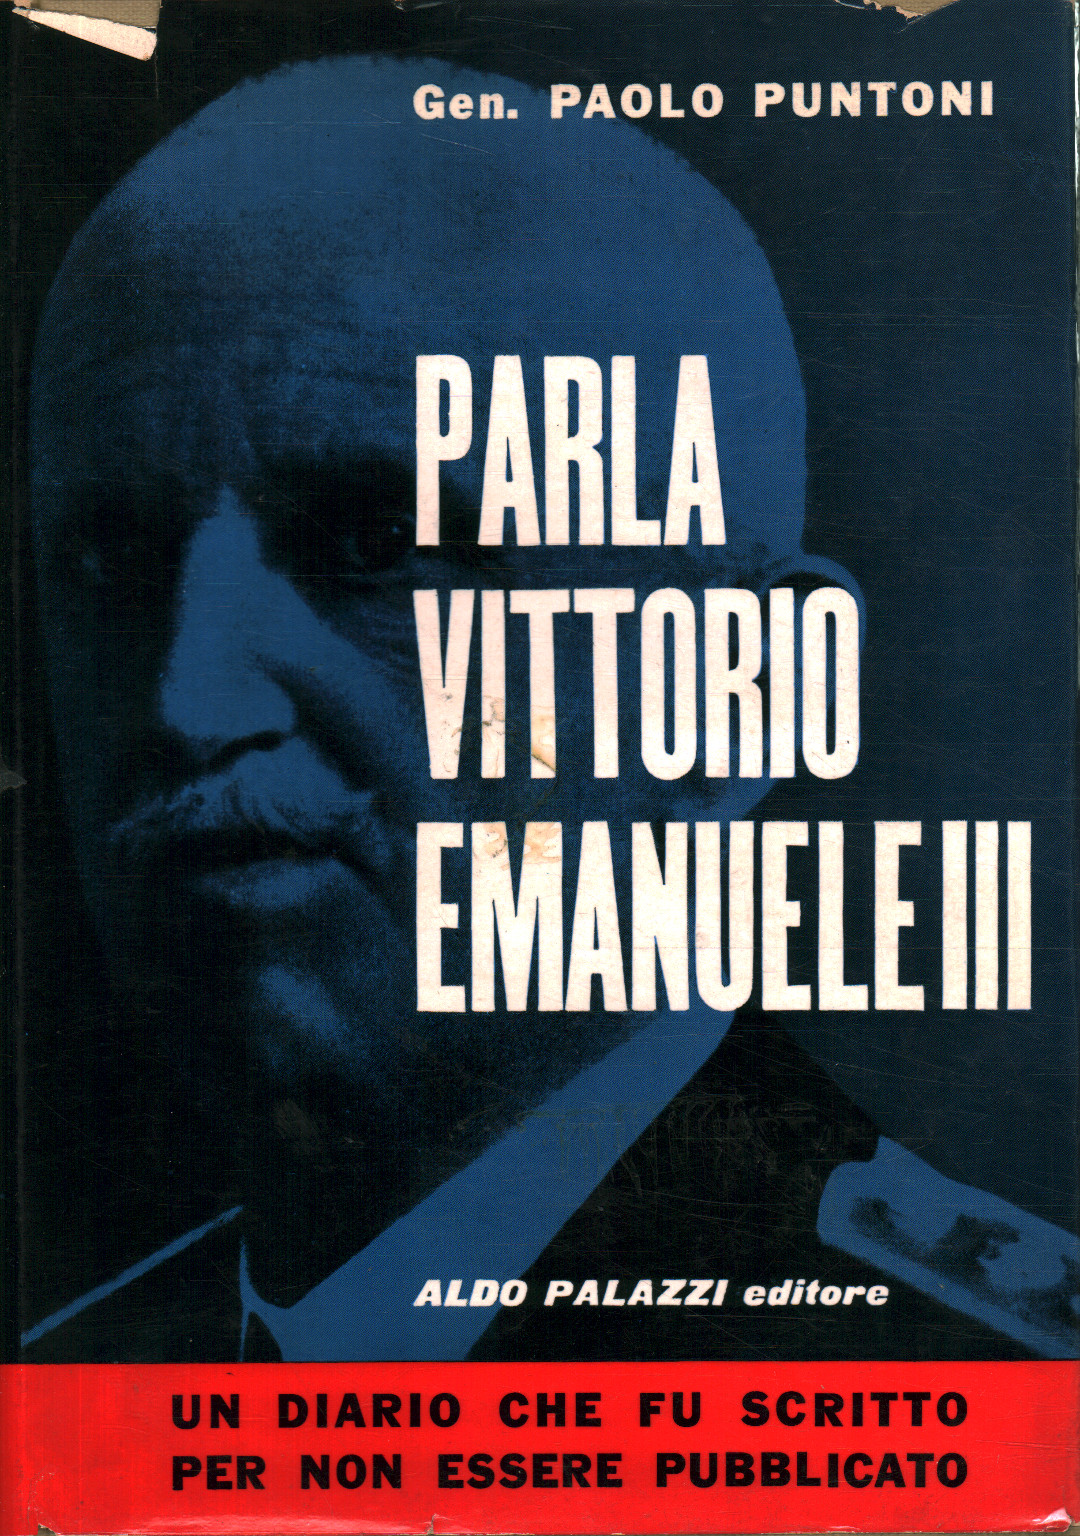 Habla Vittorio Emanuele III